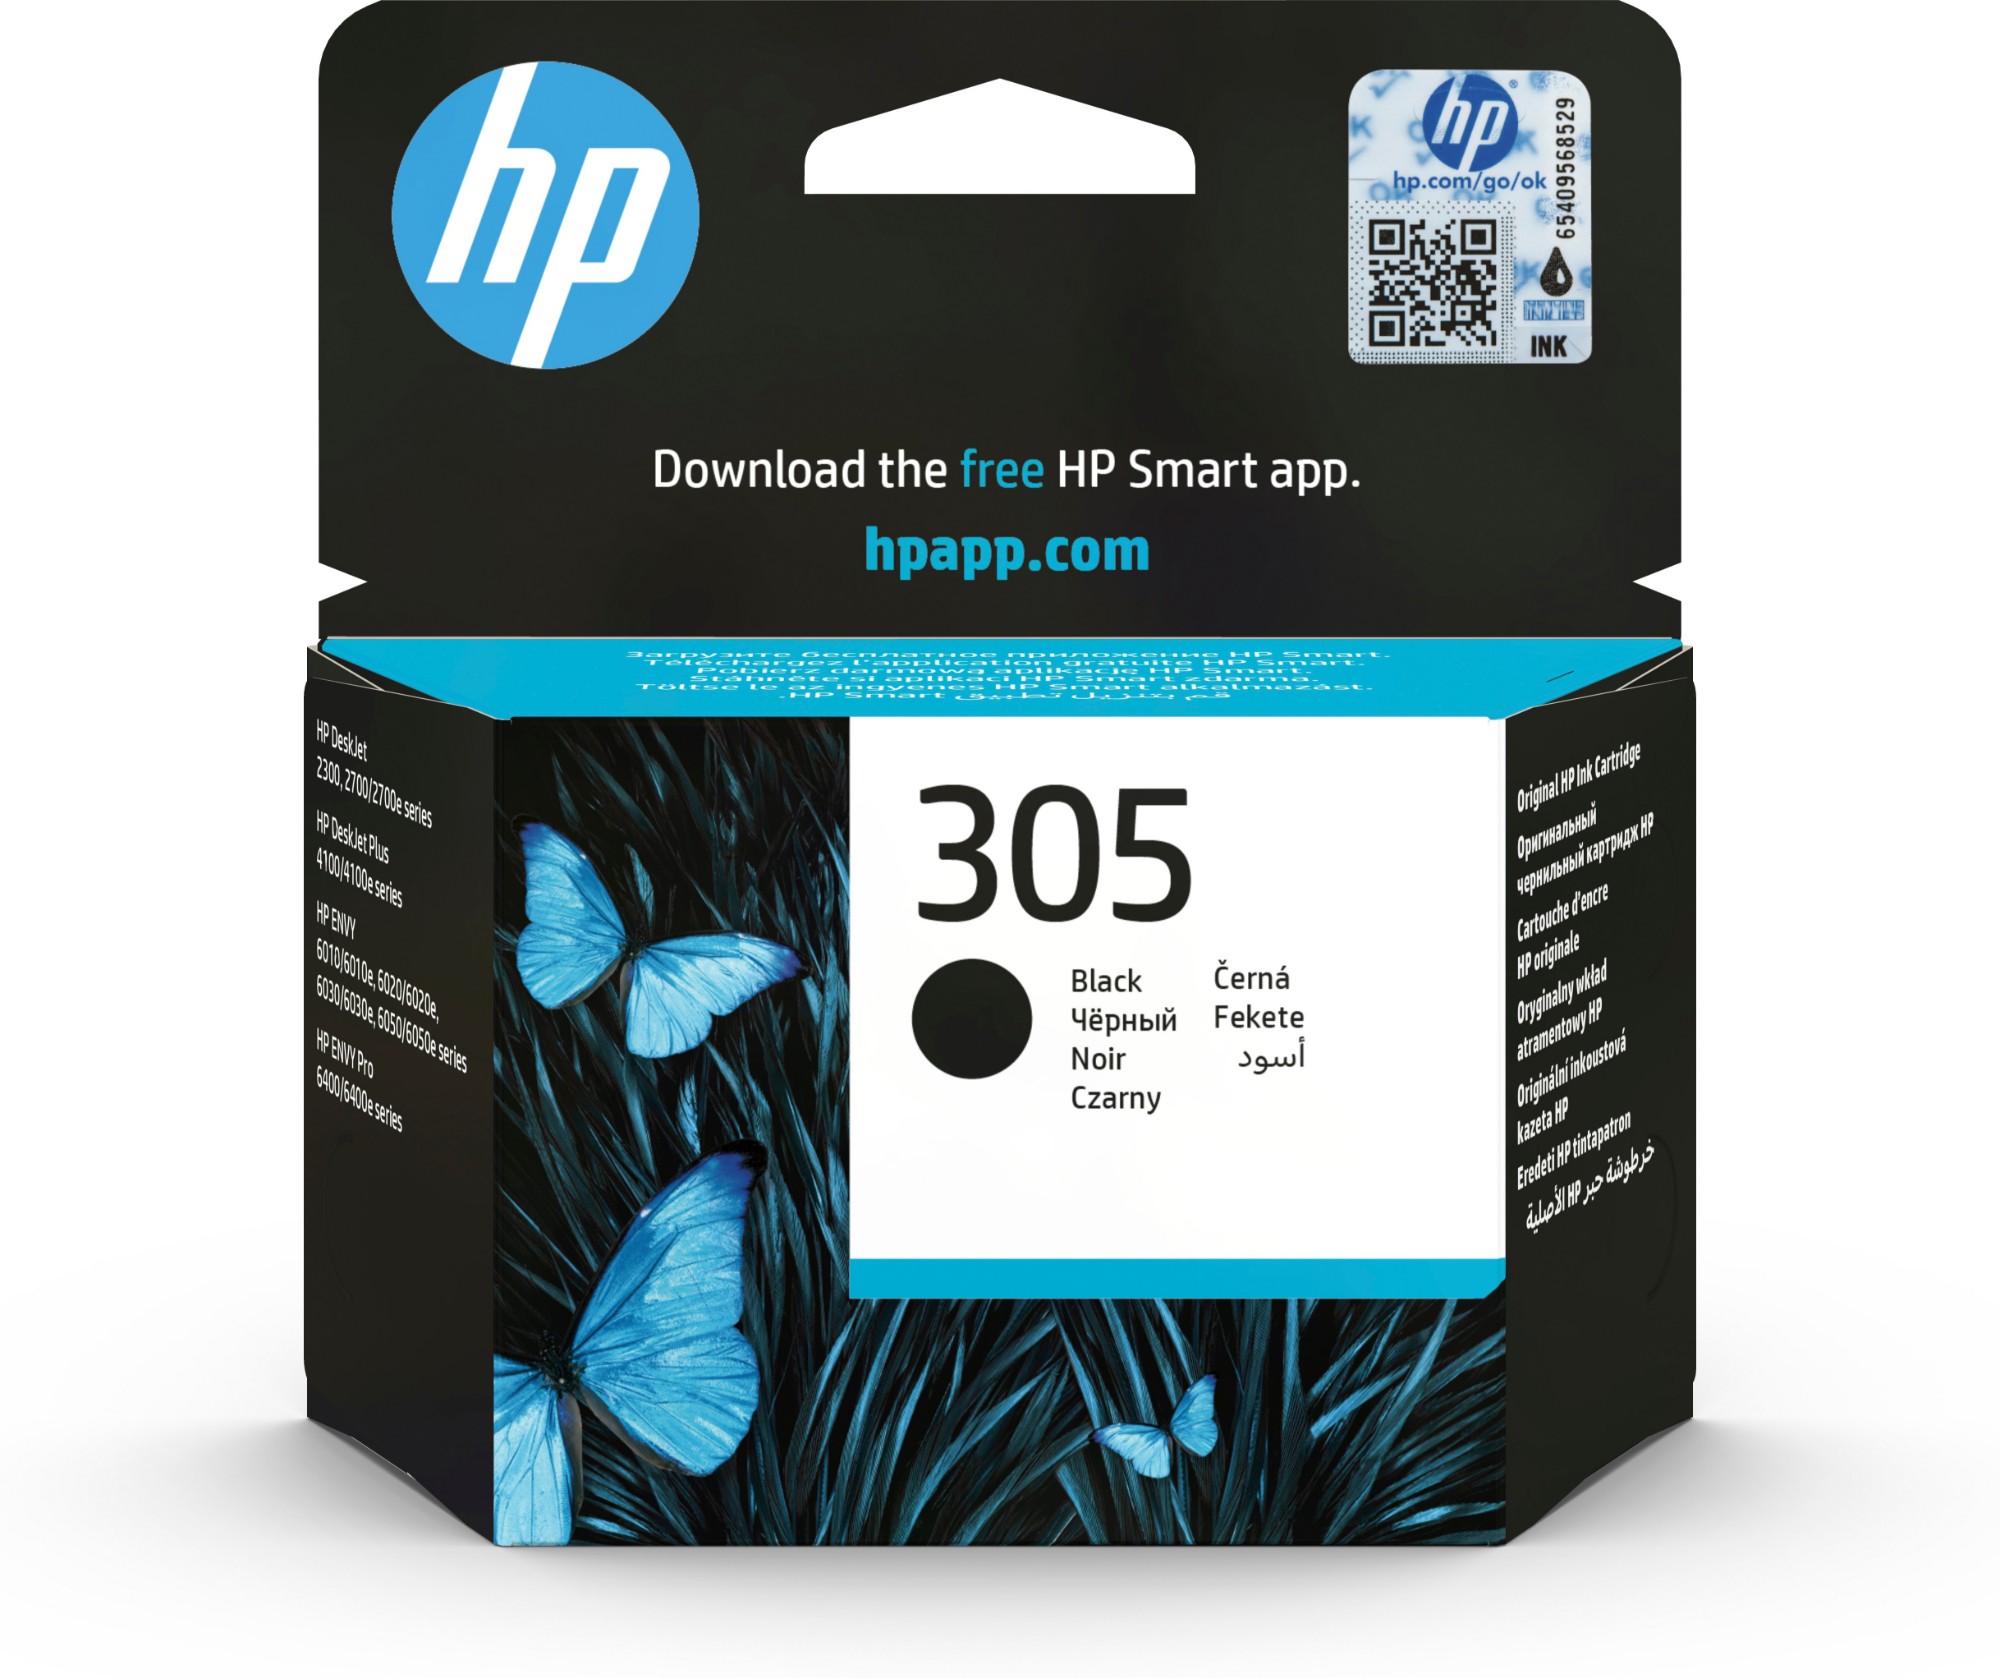 HP OfficeJet Pro 8600 Ink Cartridges